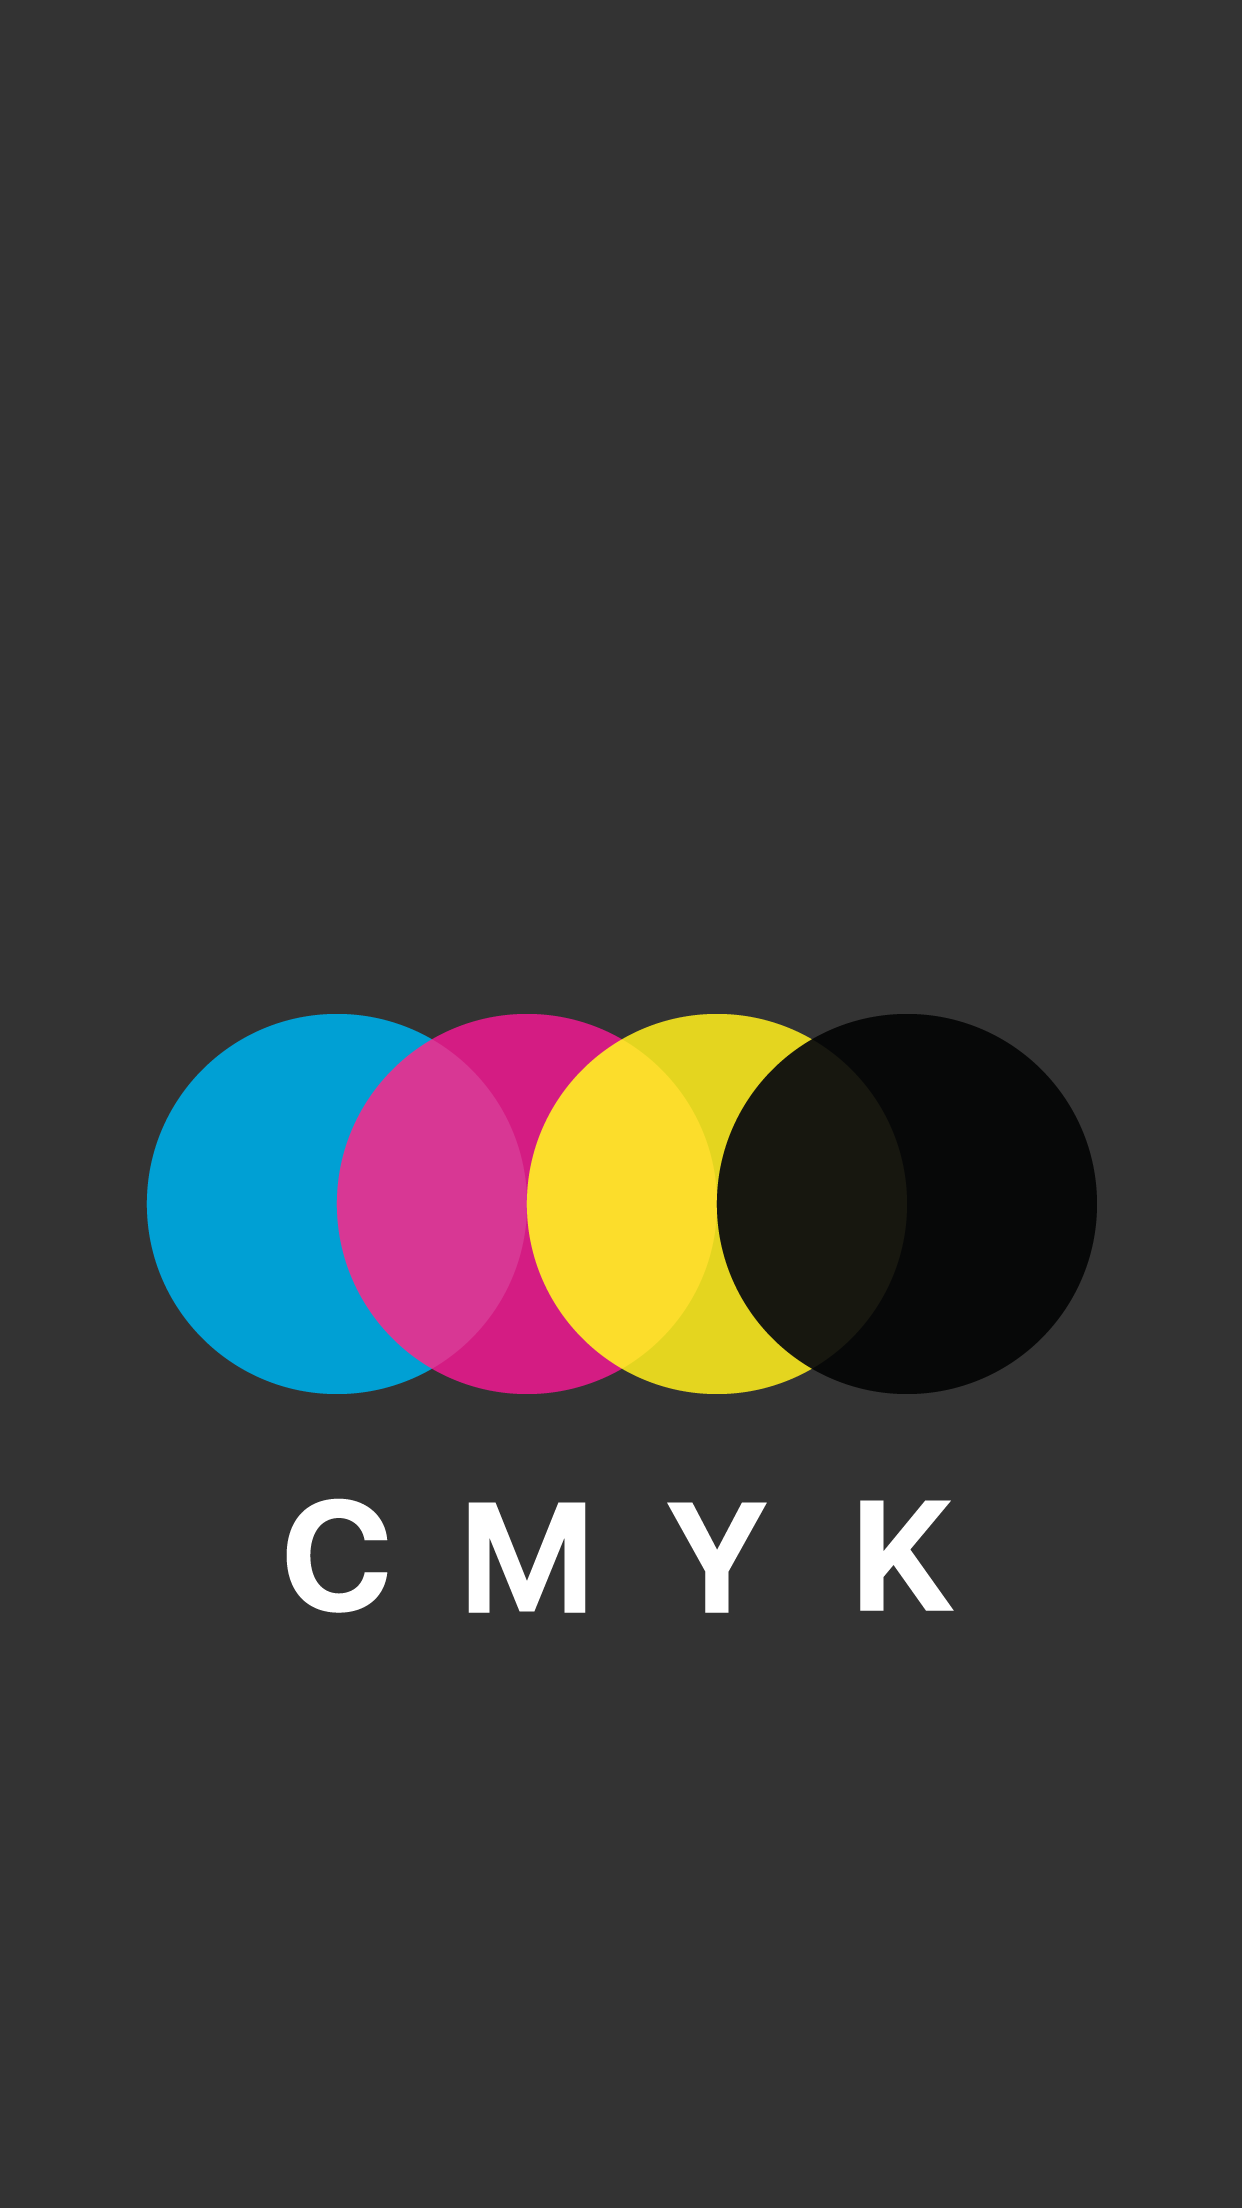 CMYK mobile wallpaper. [OC]